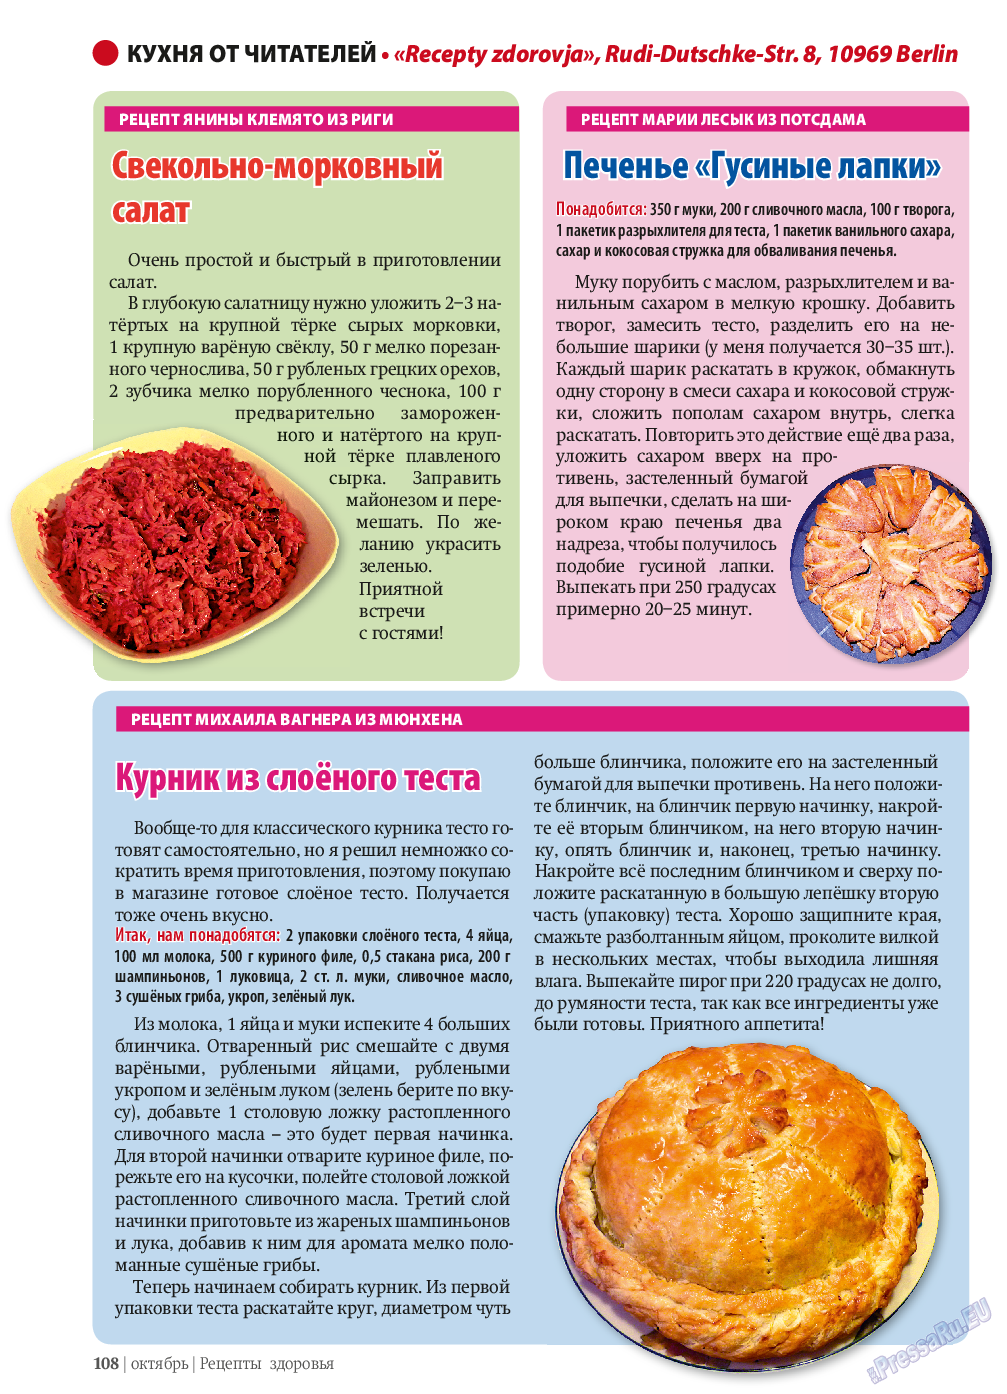 Рецепты здоровья, журнал. 2013 №10 стр.108